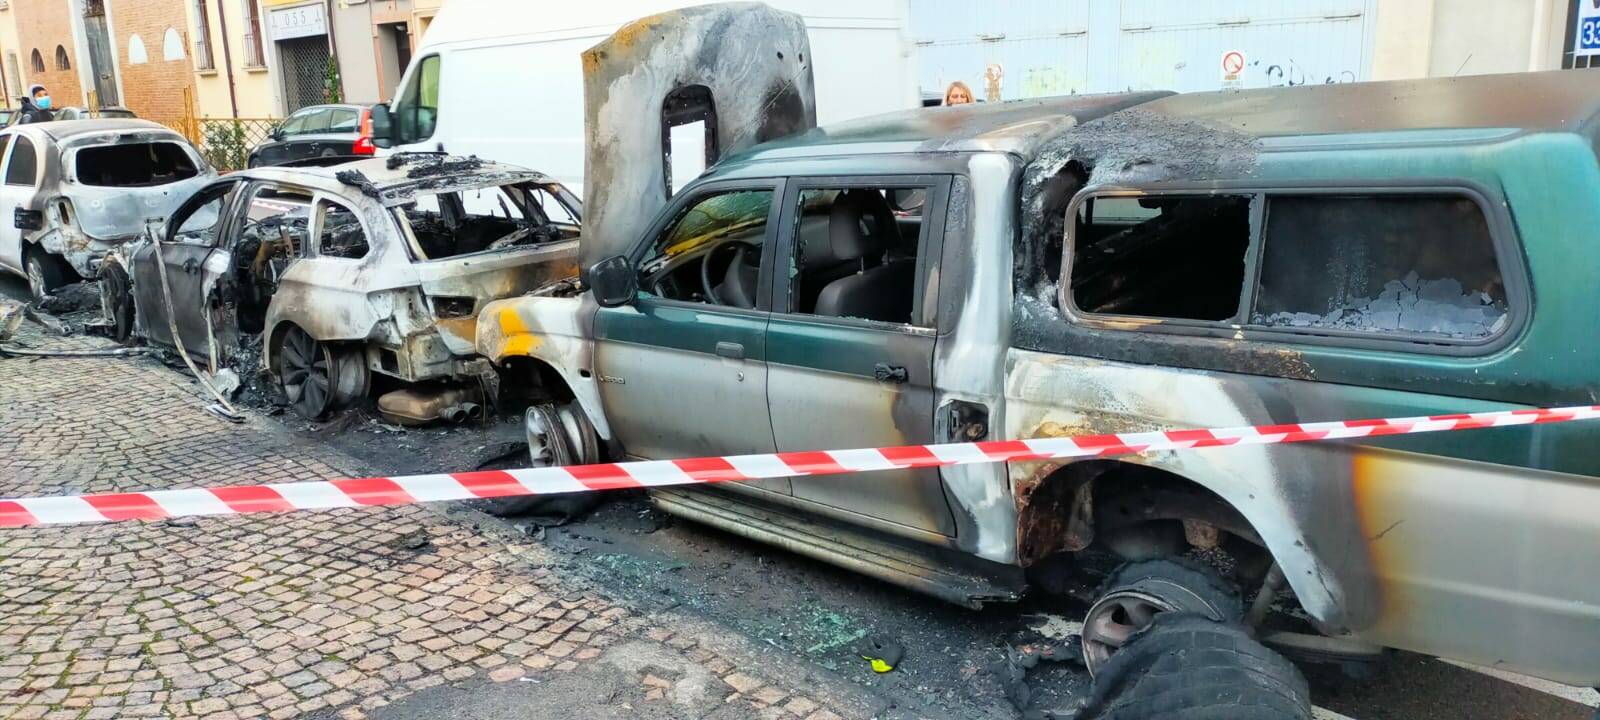 Via Filippo Re, due auto distrutte dalle fiamme